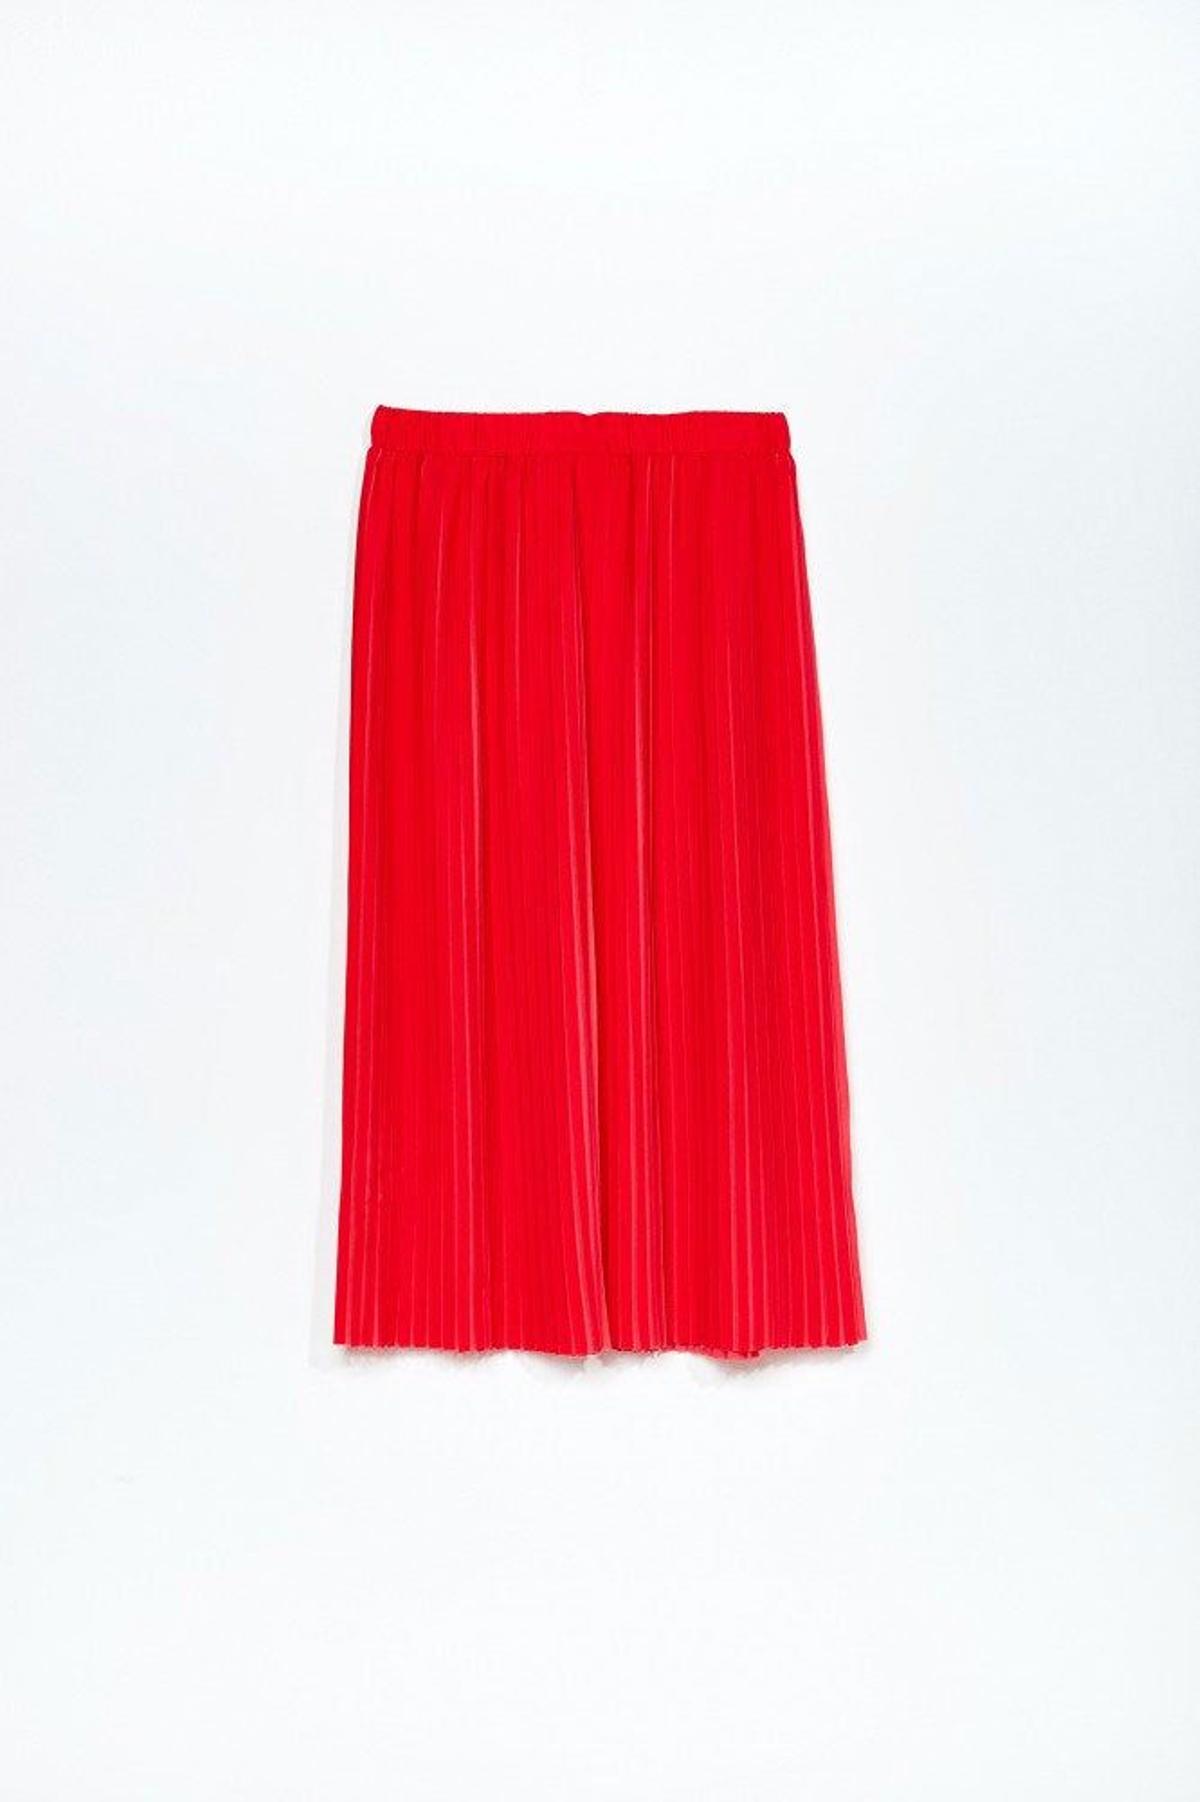 Falda plisada bicolor de Sfera. (Precio: 25, 99 euros)